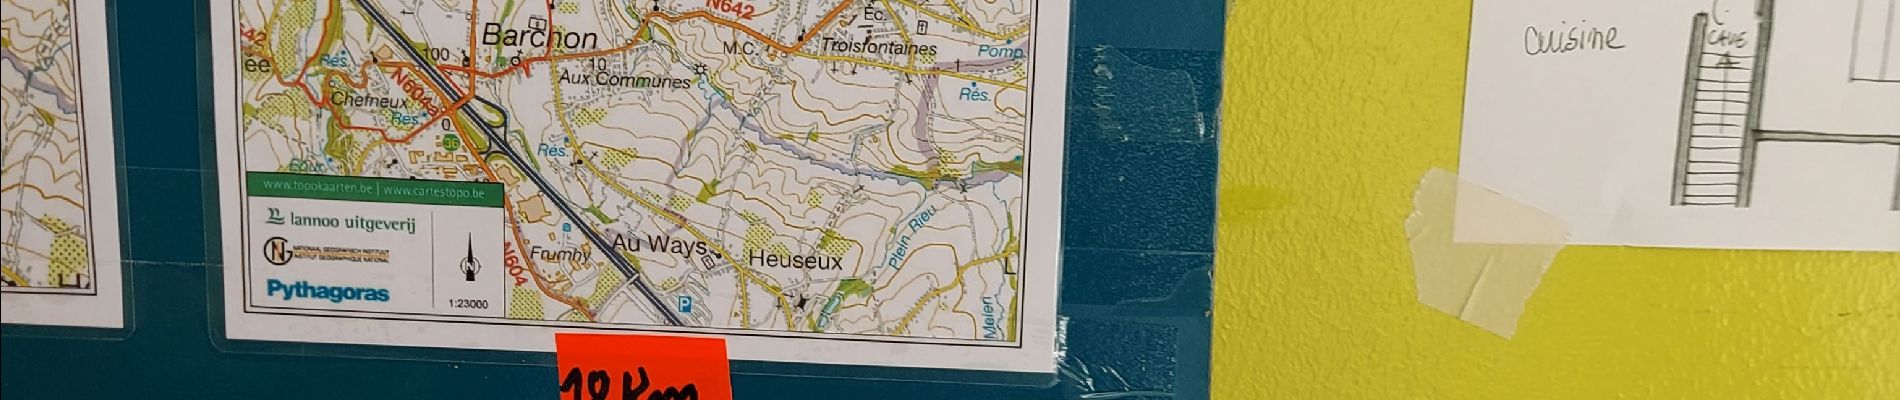 Trail Walking Blegny - Housse ( Blégny ) _ Marche Fédérale _ LIEGE - Photo